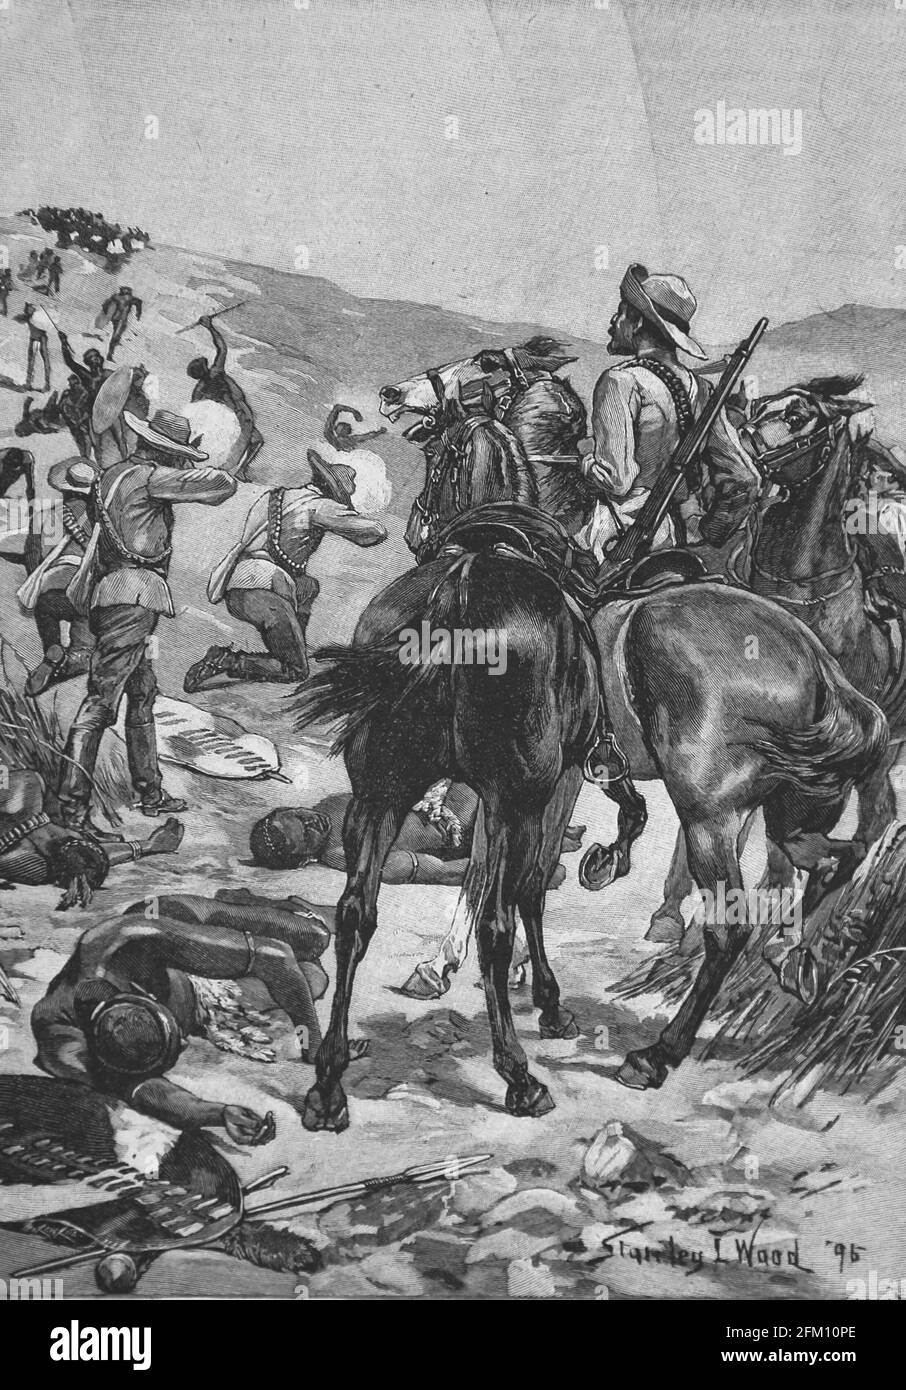 Anglo-Zulu Guerre entre l'Empire britannique et le Royaume de Zulu, 1879. Combat. Illustration ibérique, 1898. Banque D'Images